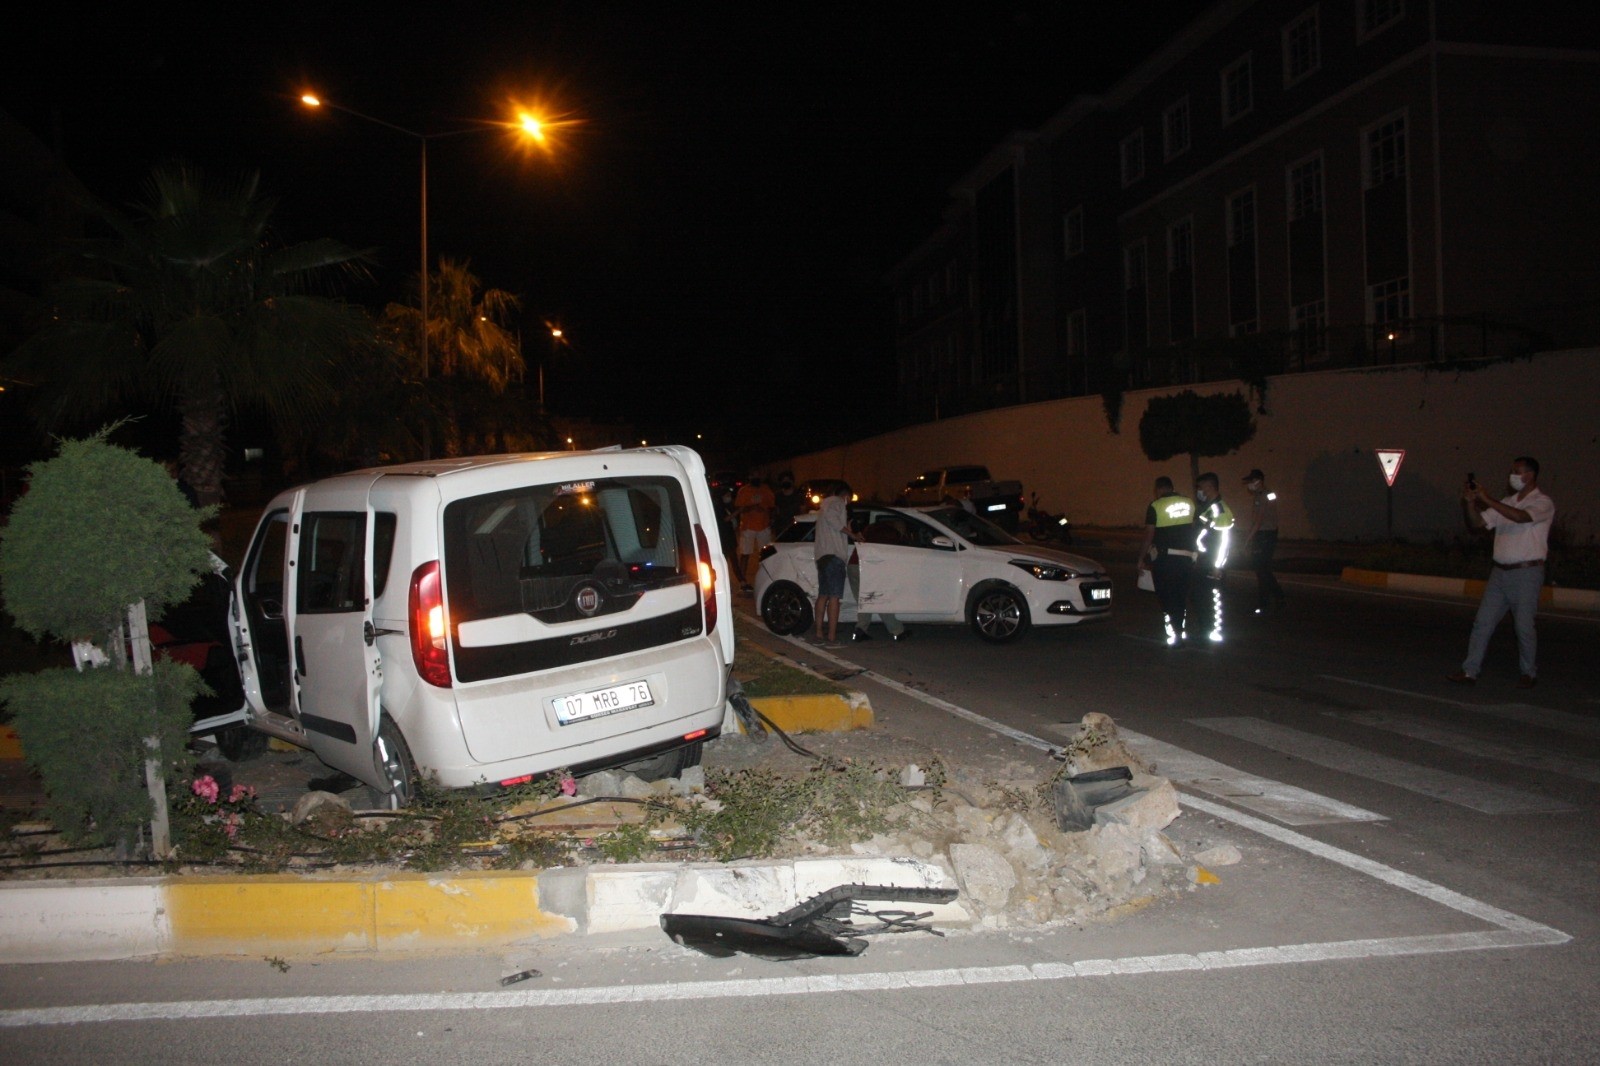 Antalya’da kırmızı ışık ihlali sonucu meydana gelen kazada 6 kişi yaralandı